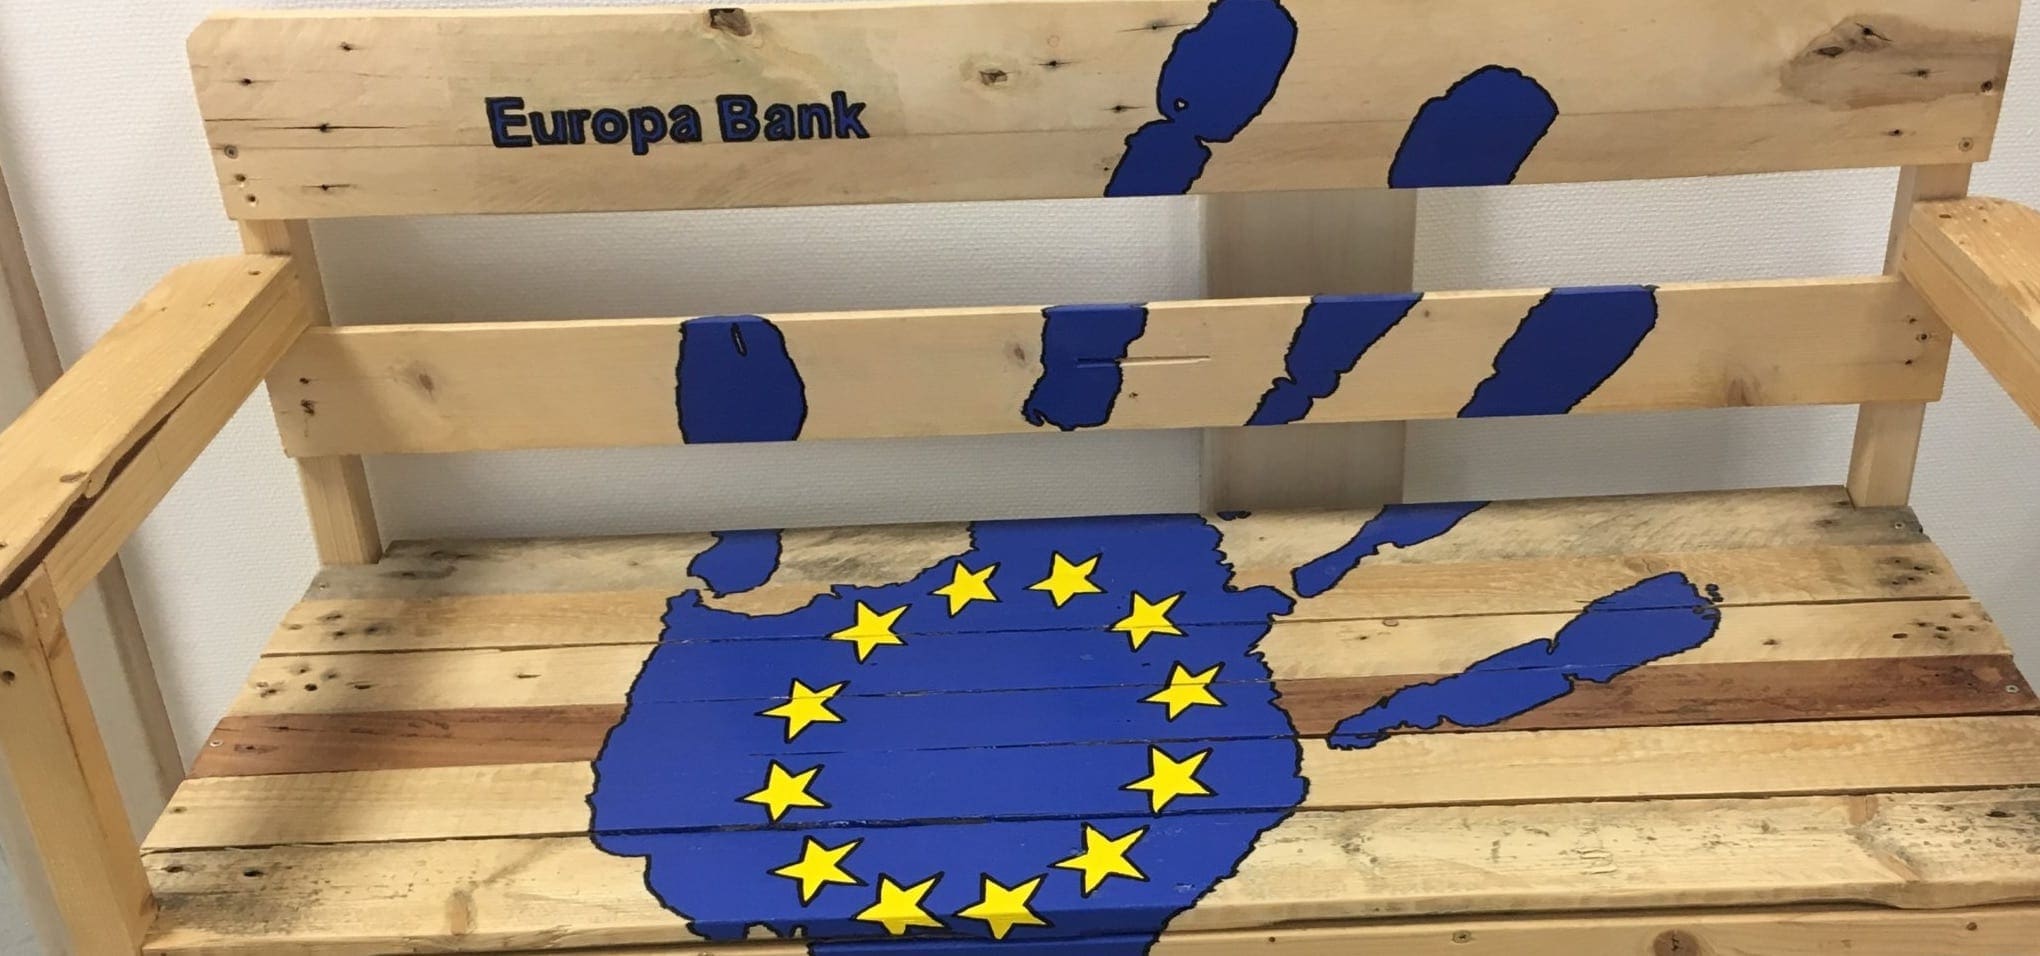 En af to eurobanker skabt af byggelauget.